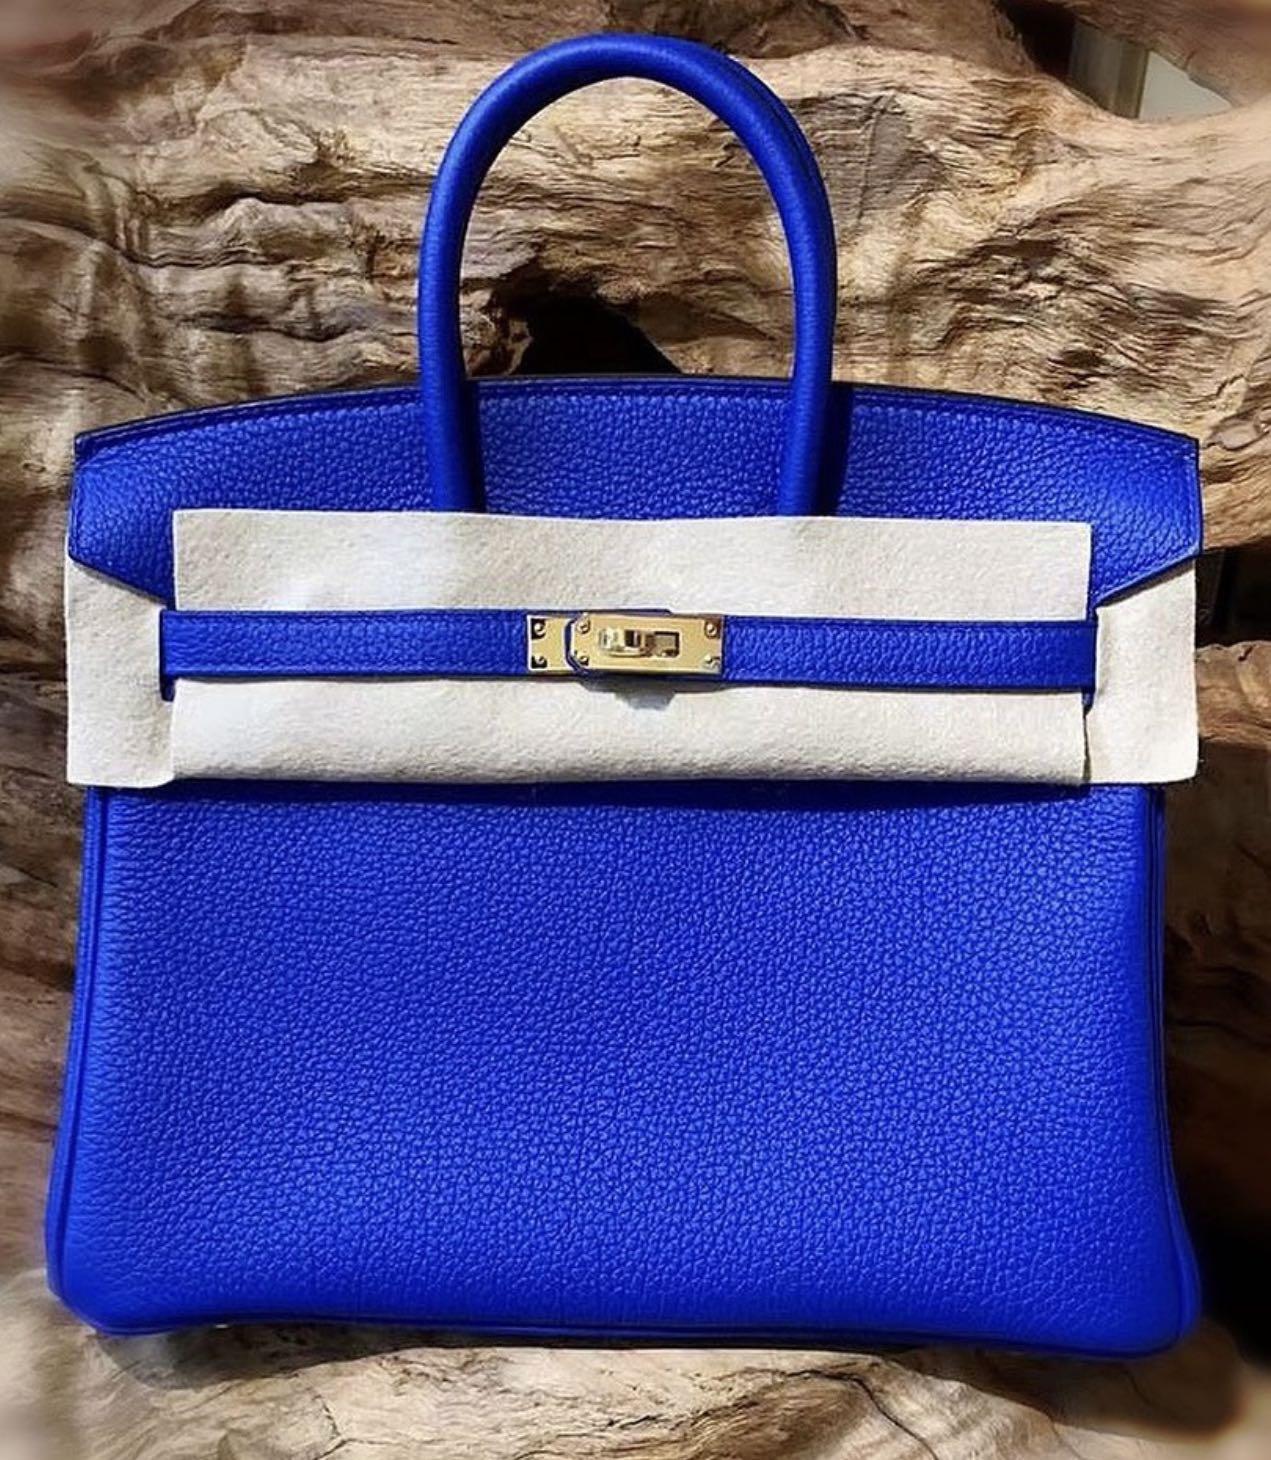 Hermes Birkin bag 35 Blue royal Togo leather Gold hardware